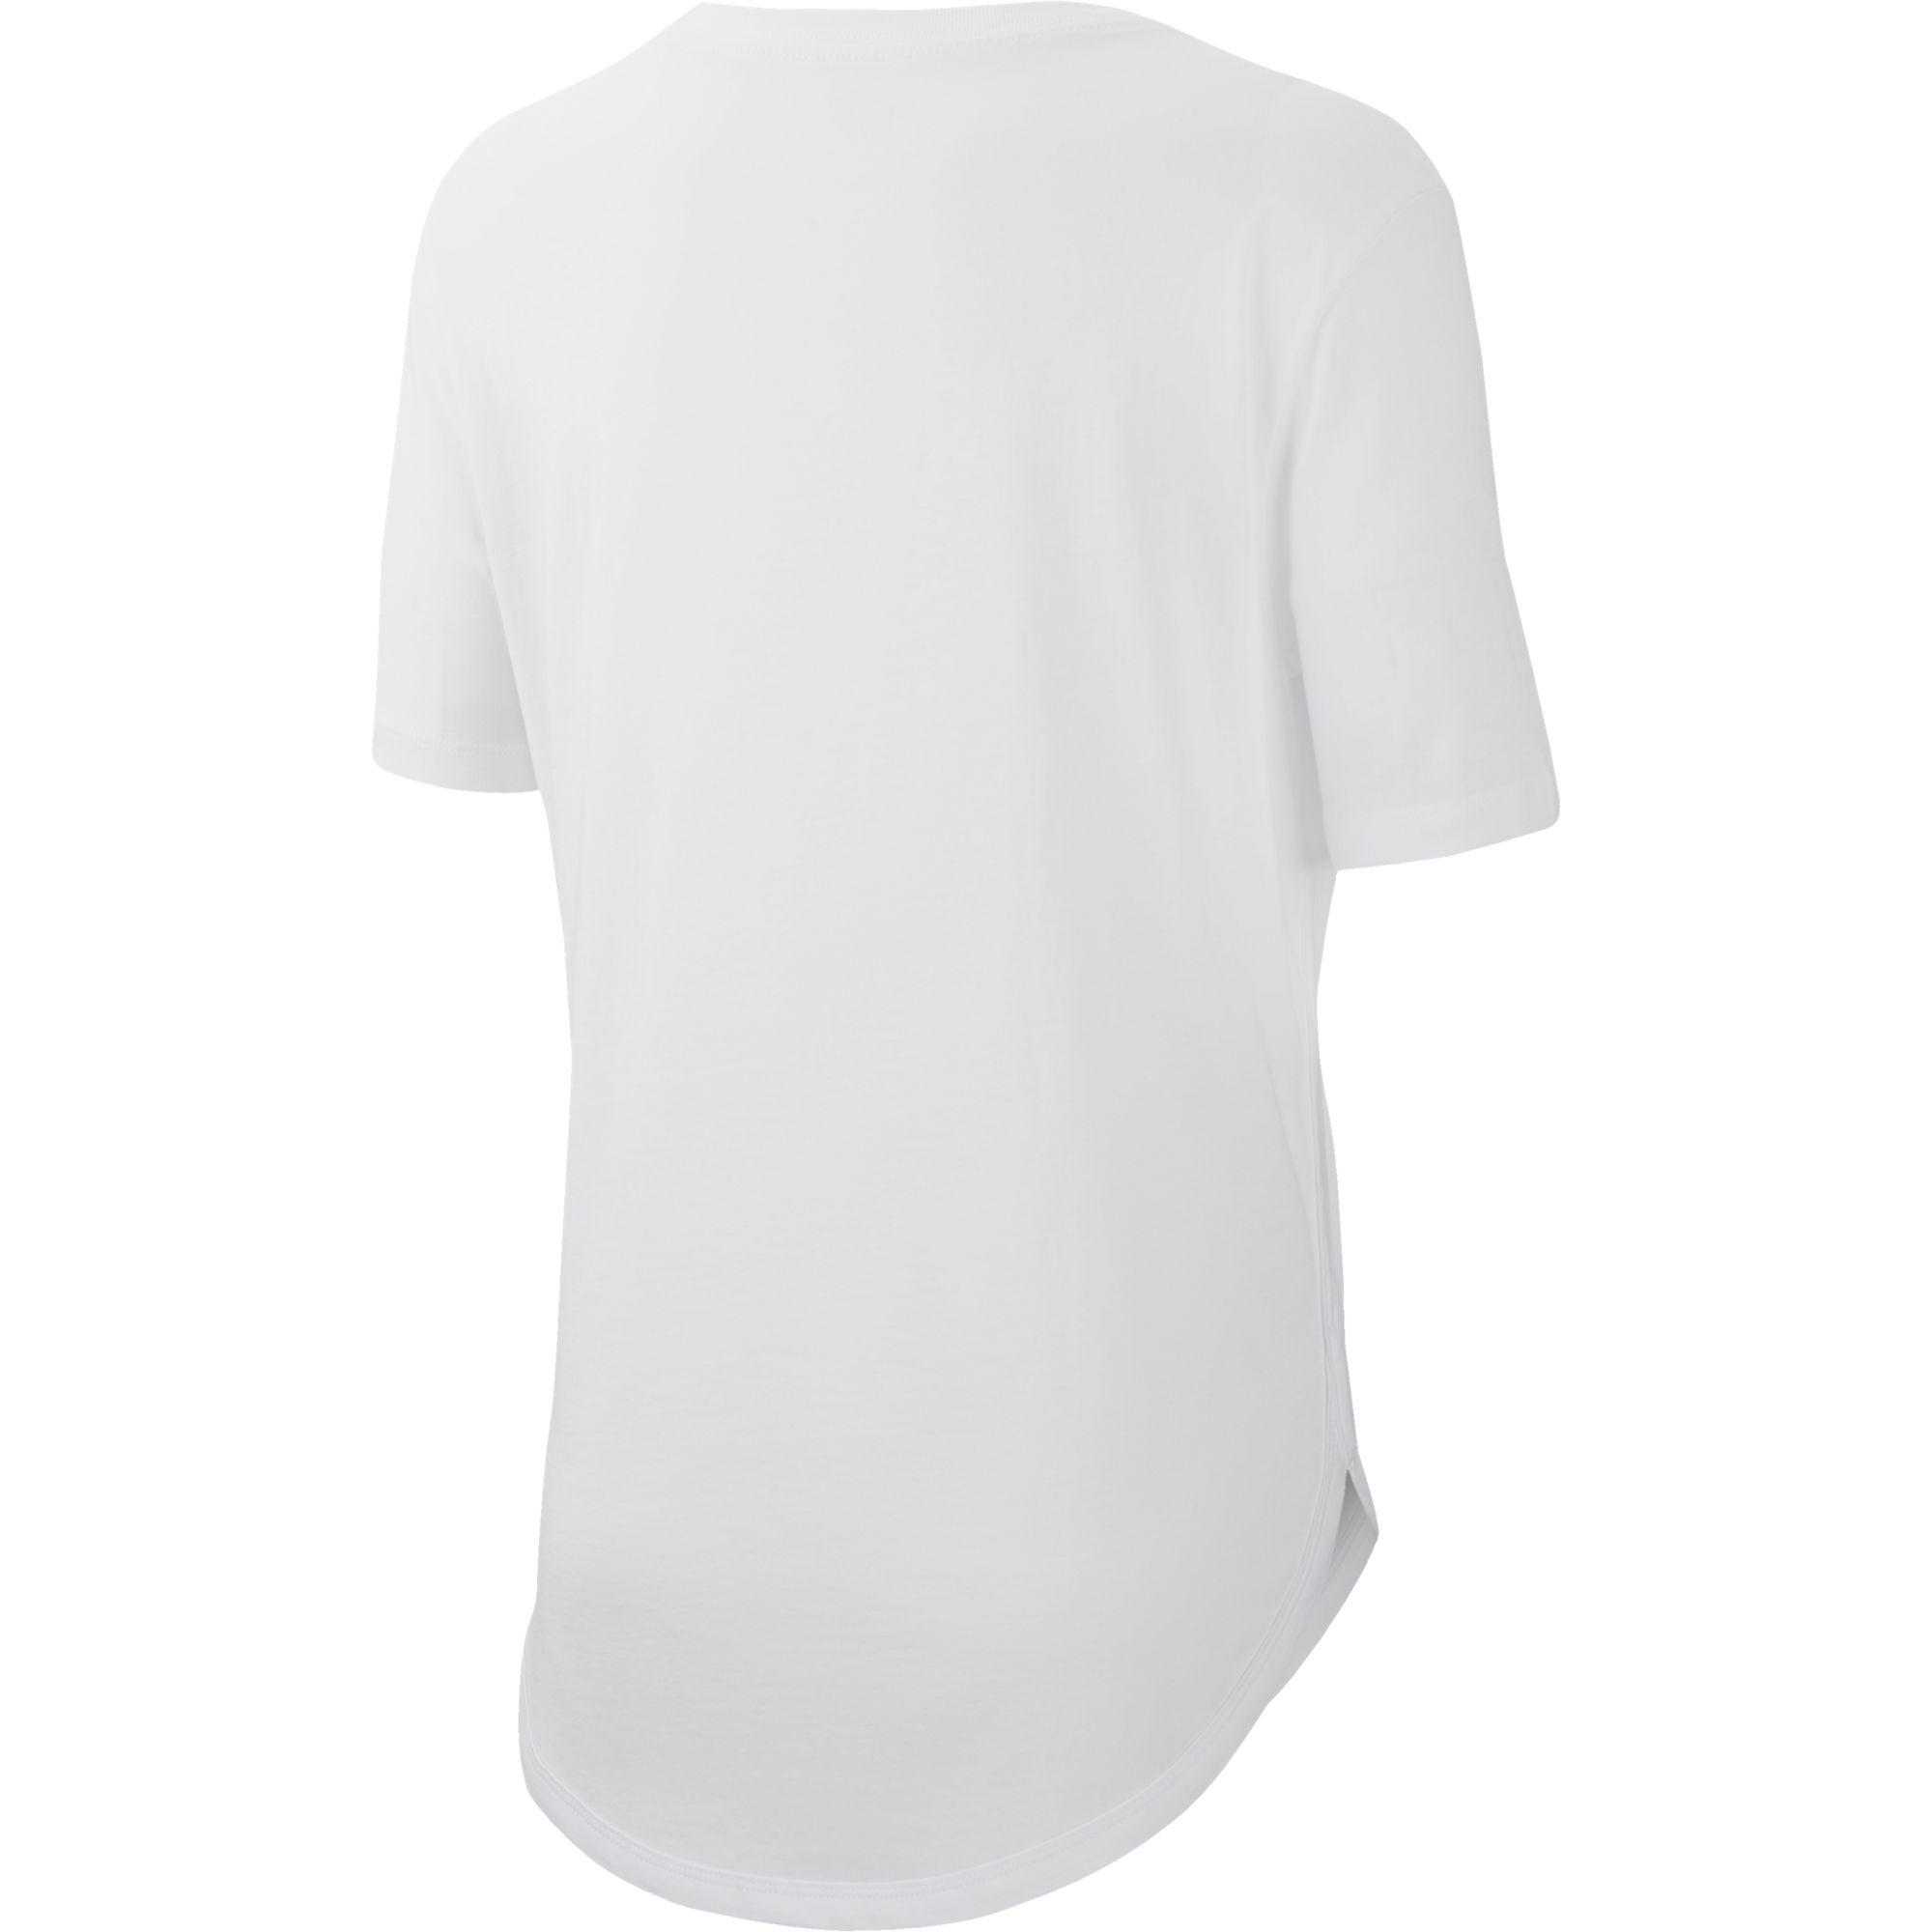 Nike Womens Graphic Tennis T-Shirt - White - Tennisnuts.com